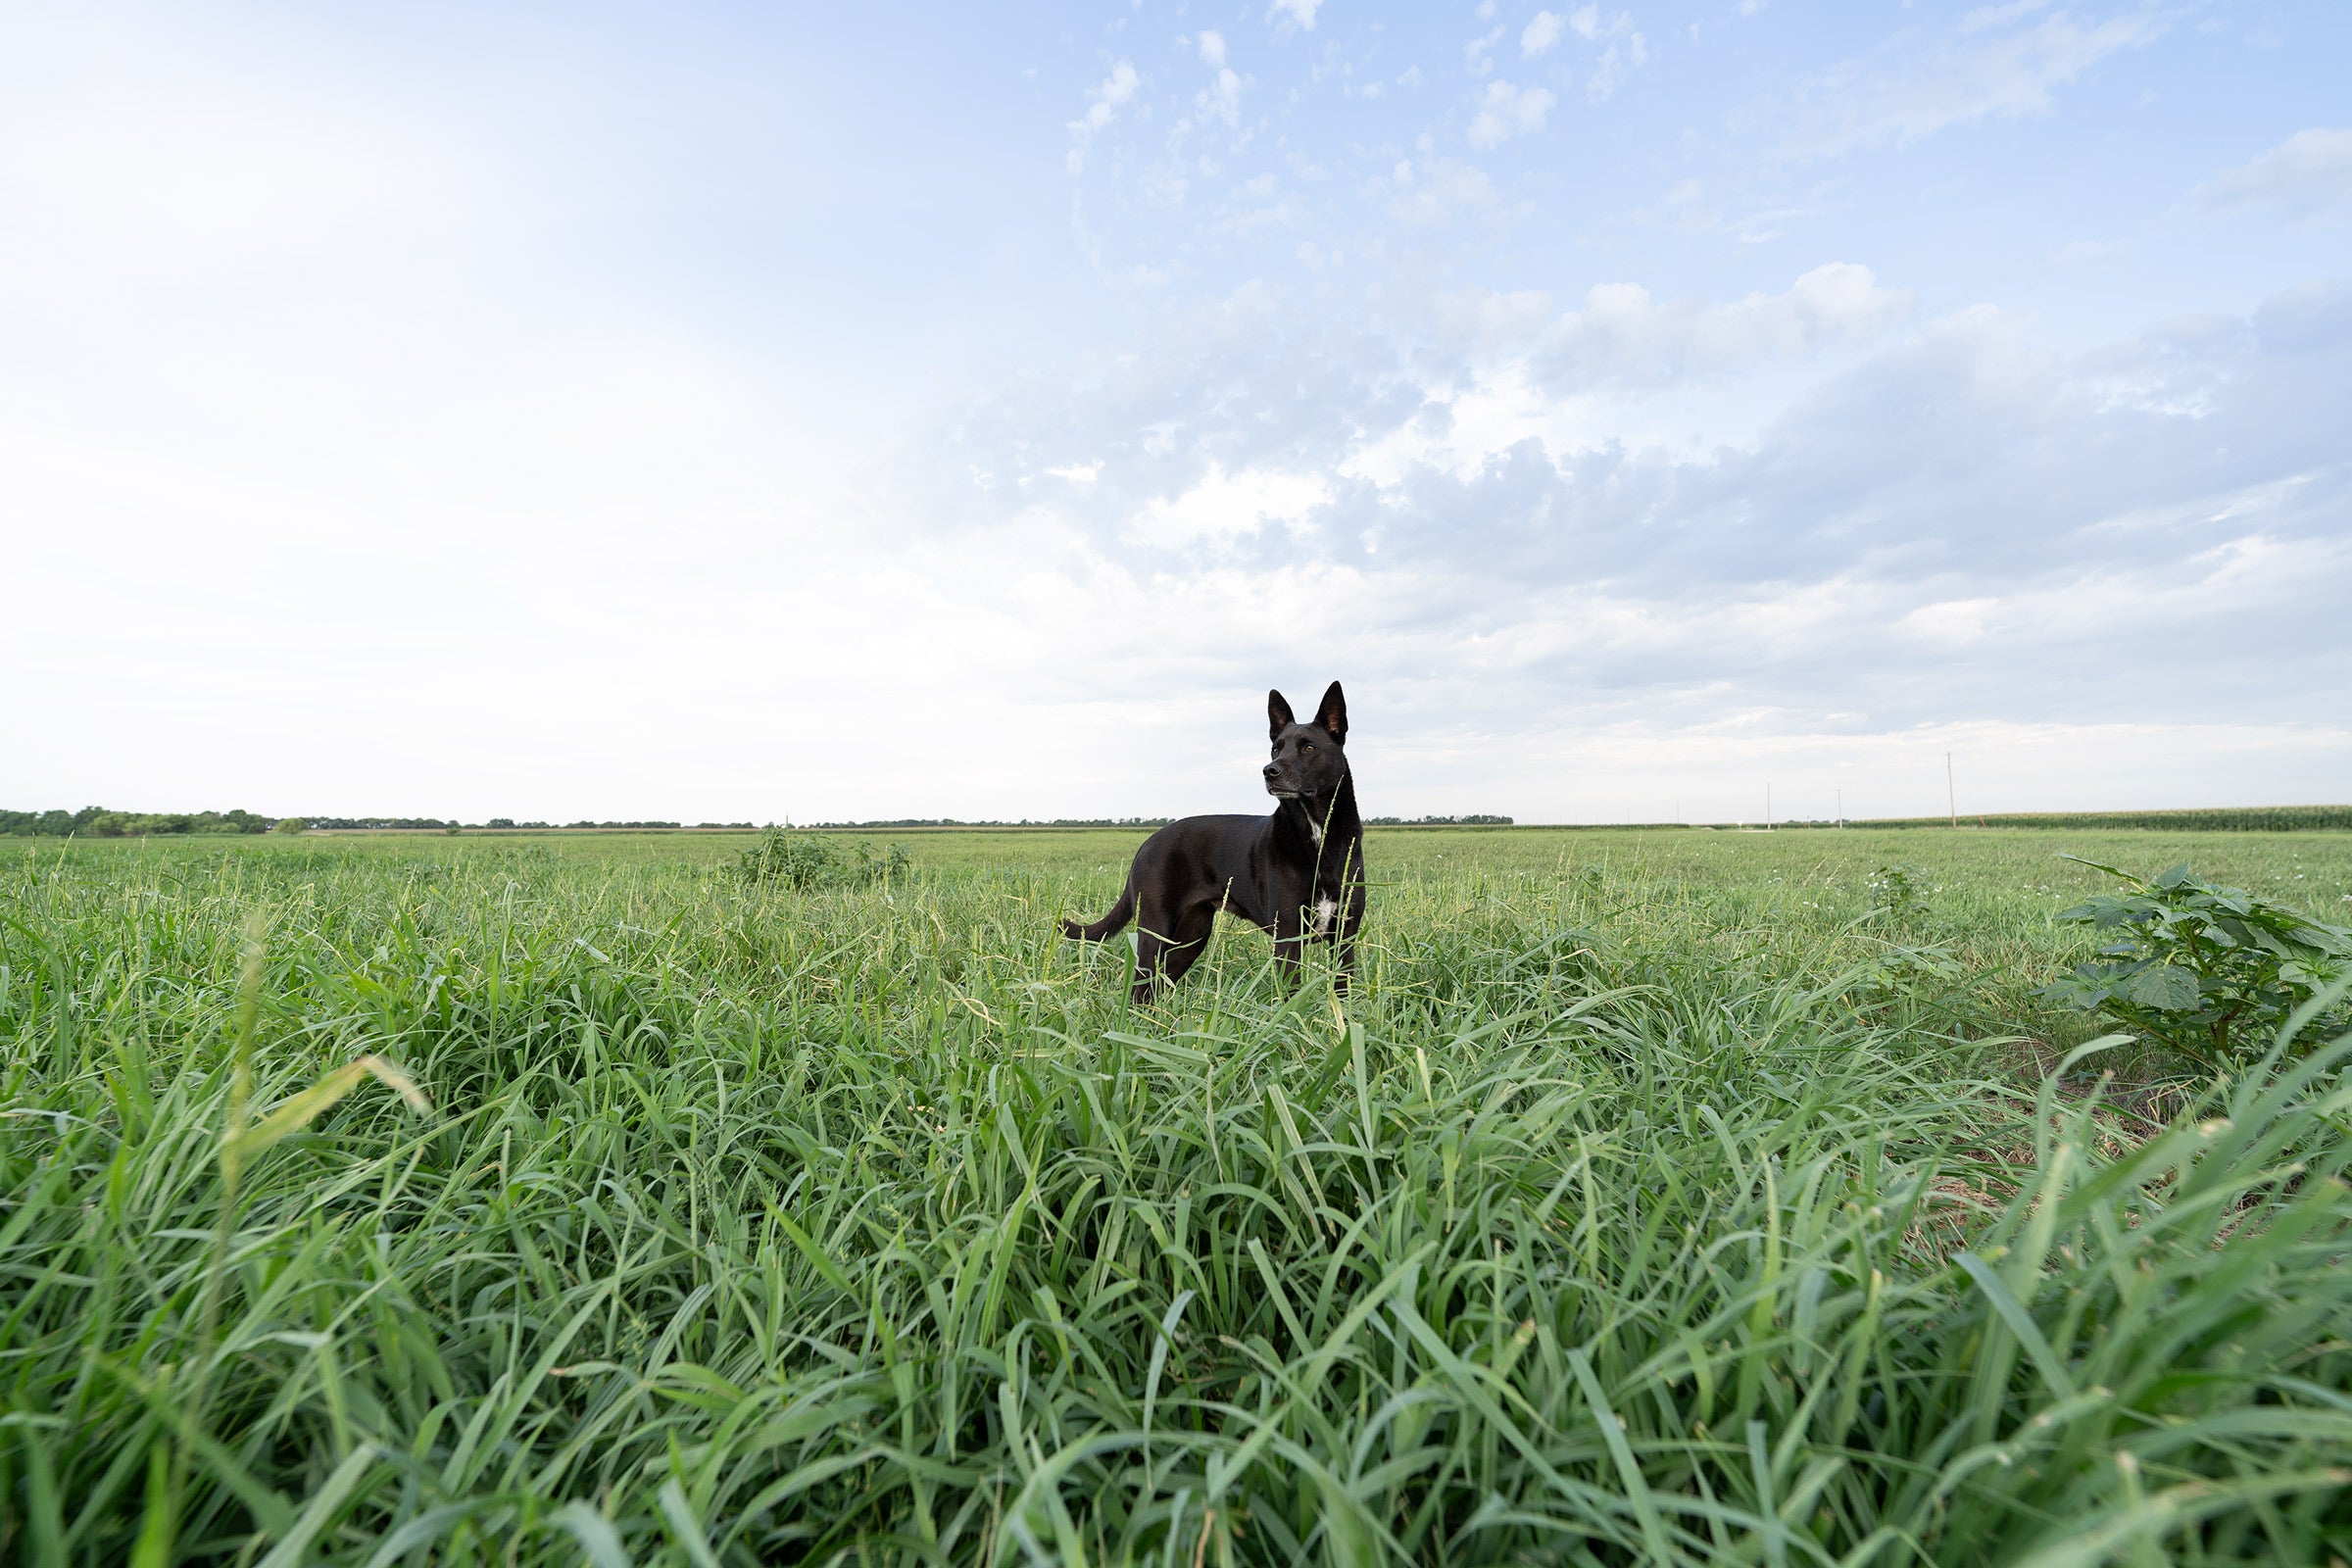 a black dog in a wide open field